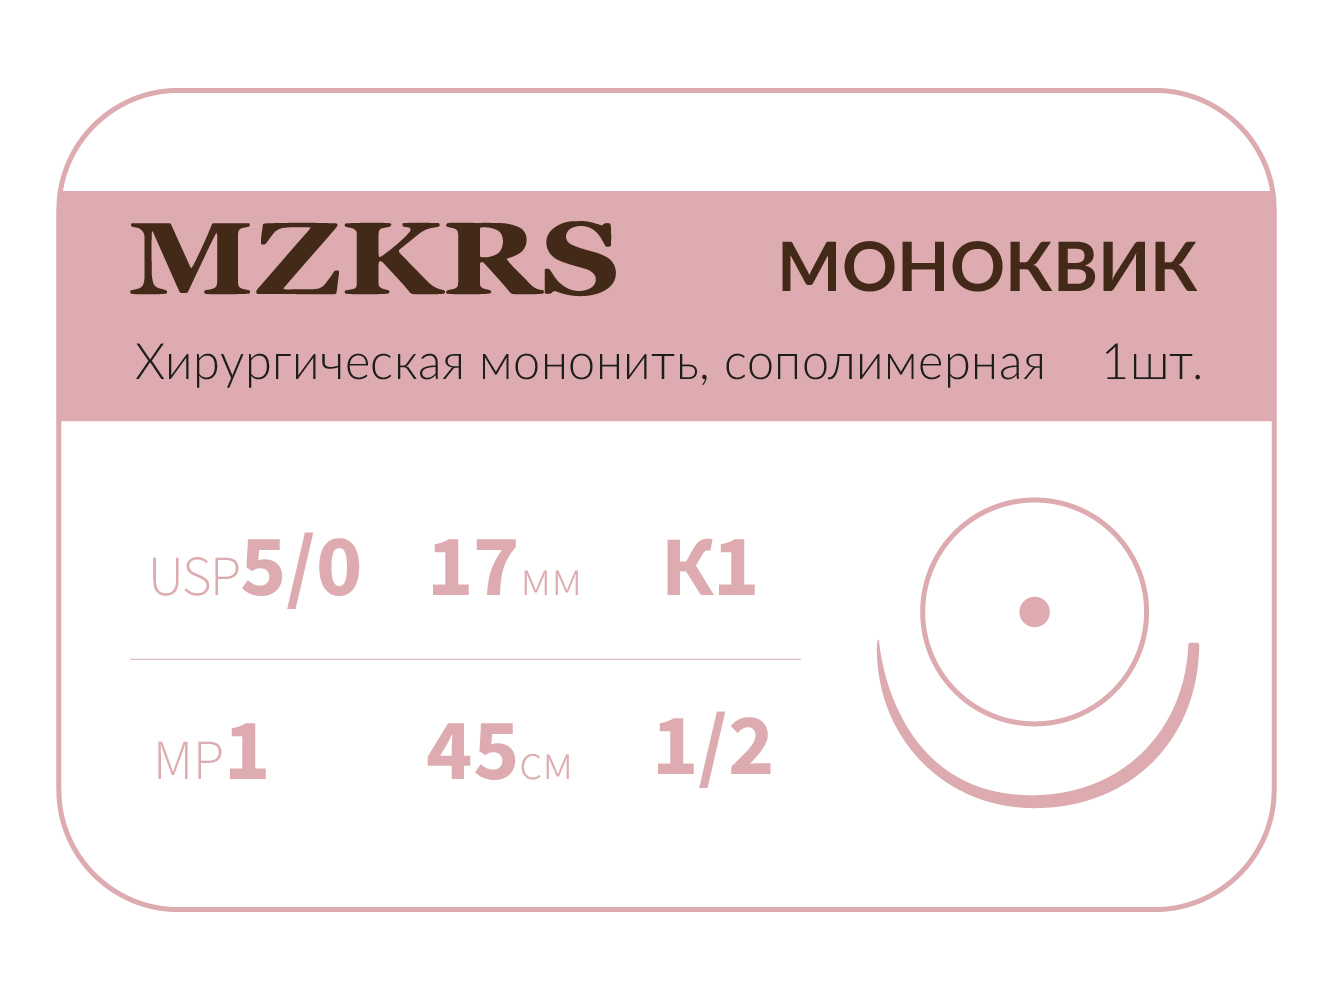 1712К1 Premium-5/0 (1)45  МОНК МОНОКВИК хирургическая мононить, сополимерная, колющая игла, MZKRS (Россия)